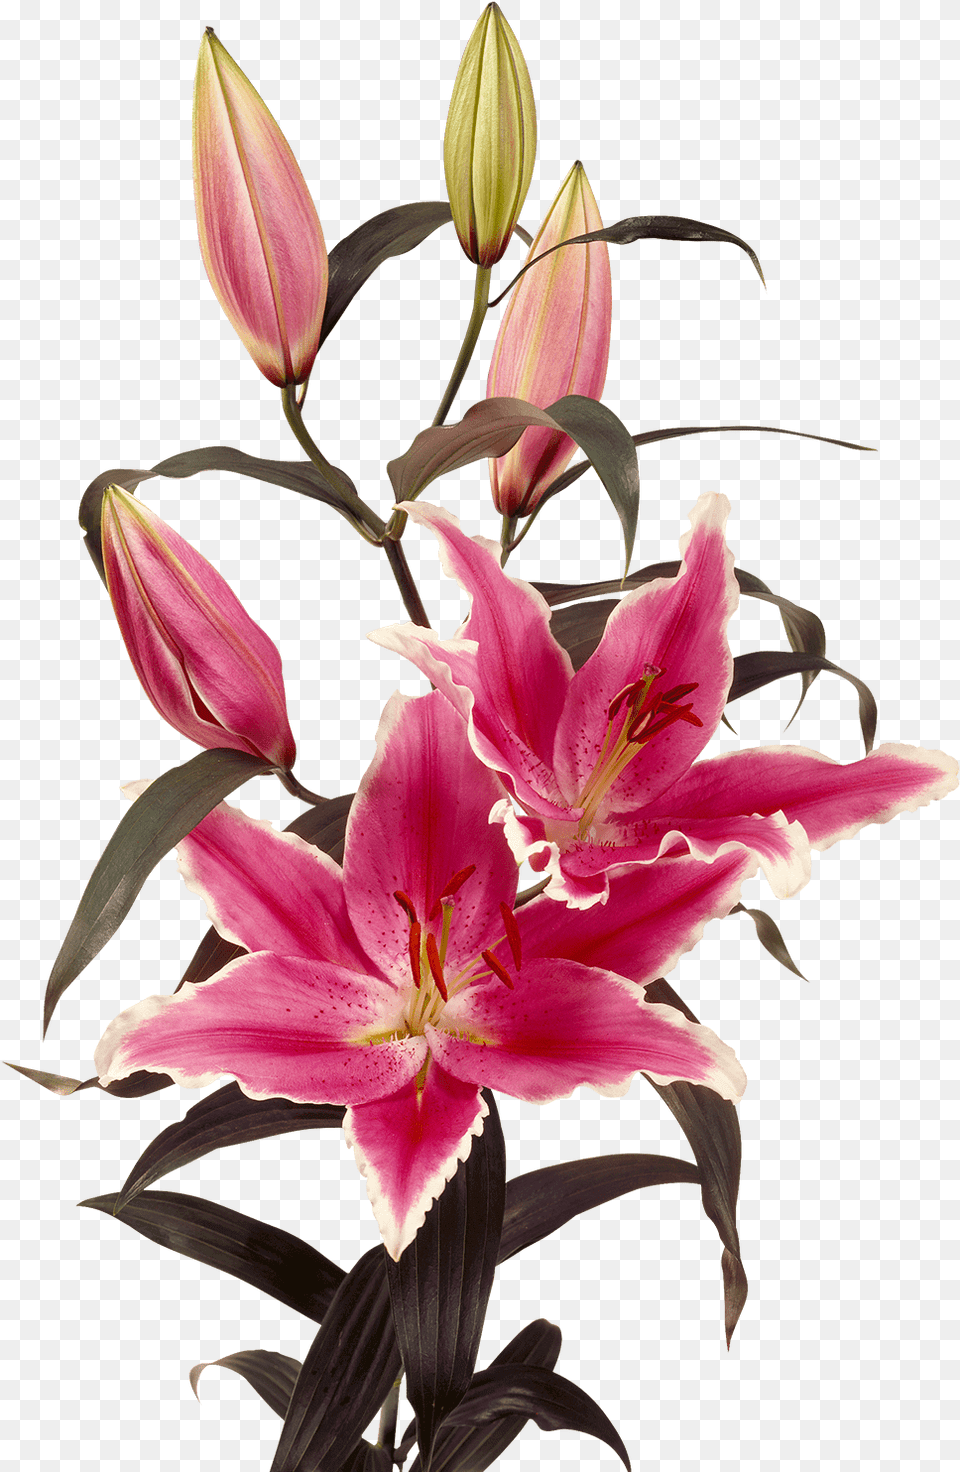 Oriental Lily Oriental Lily Oriental Lily Oriental Lily, Flower, Petal, Plant, Flower Arrangement Free Png